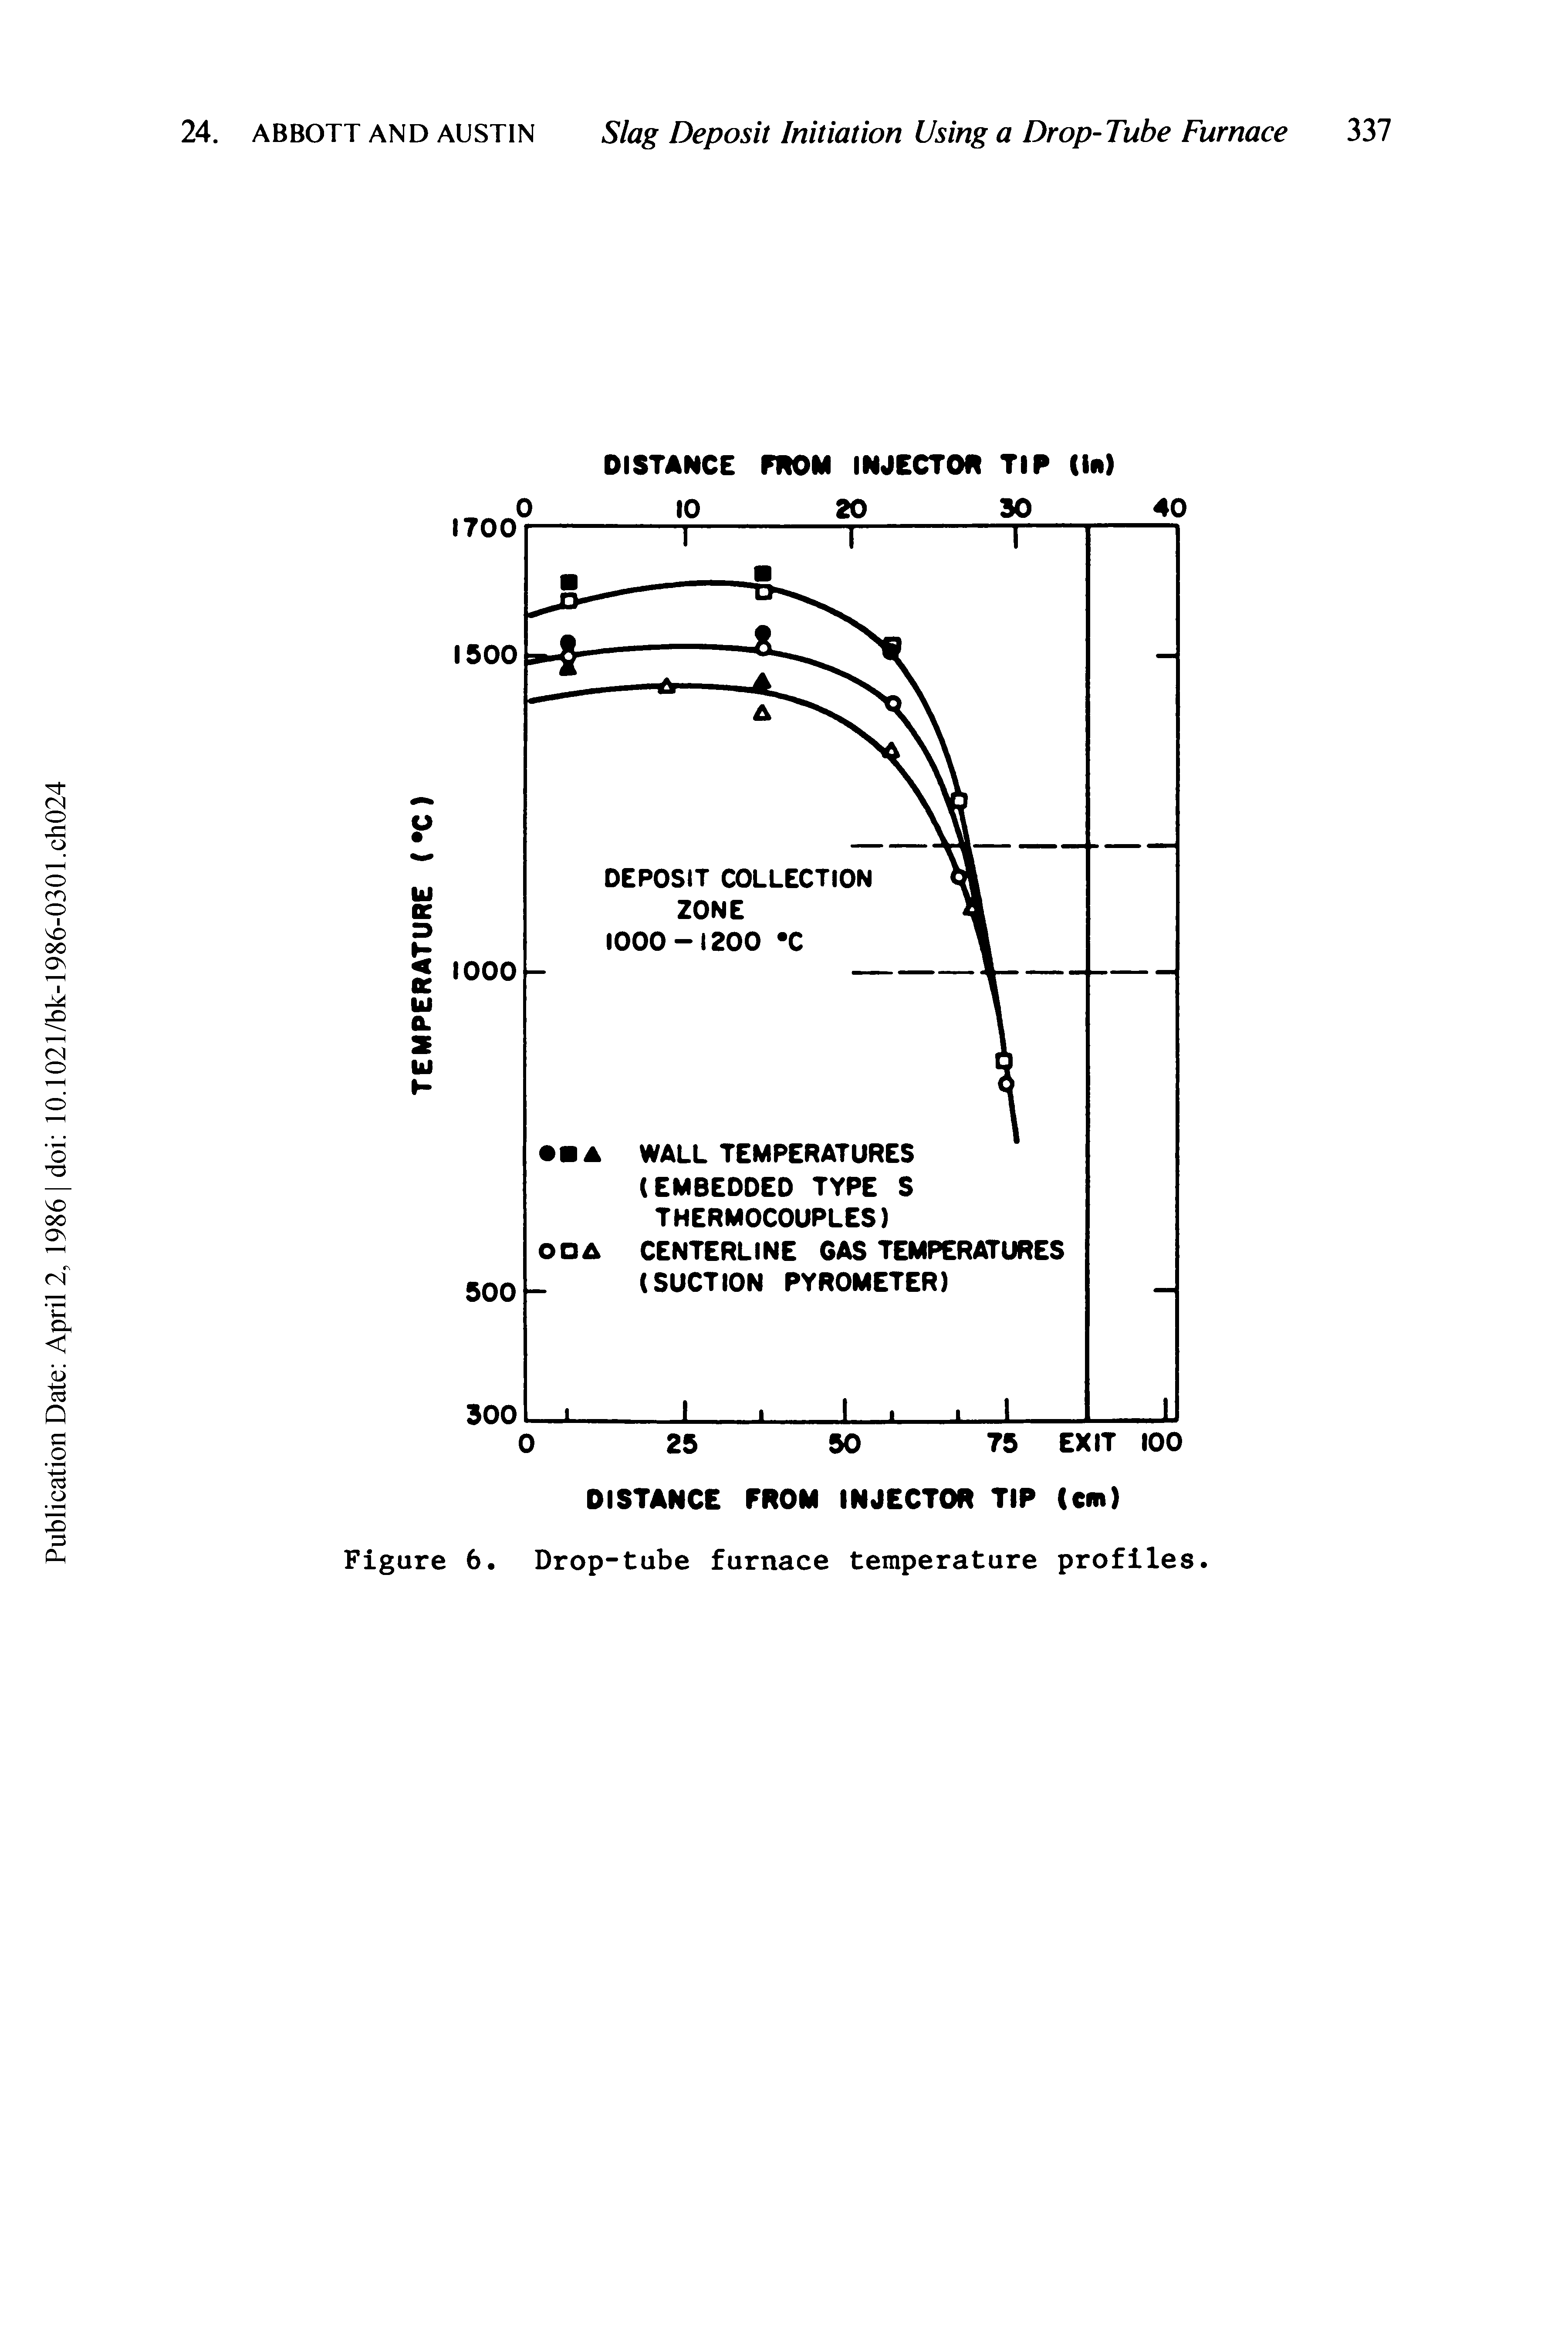 Figure 6. Drop-tube furnace temperature profiles.